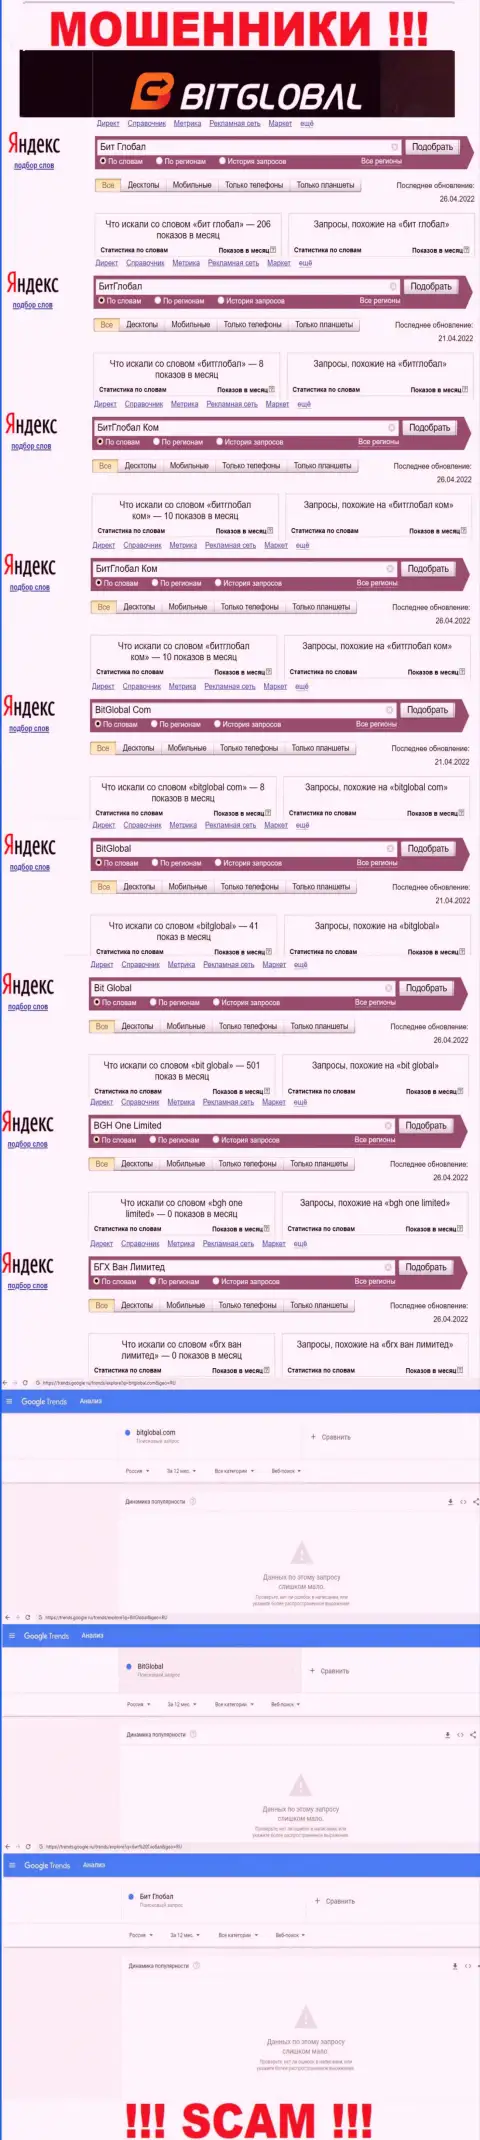 Подробная информация по суммарному числу online-запросов по мошенникам BGH One Limited во всемирной паутине